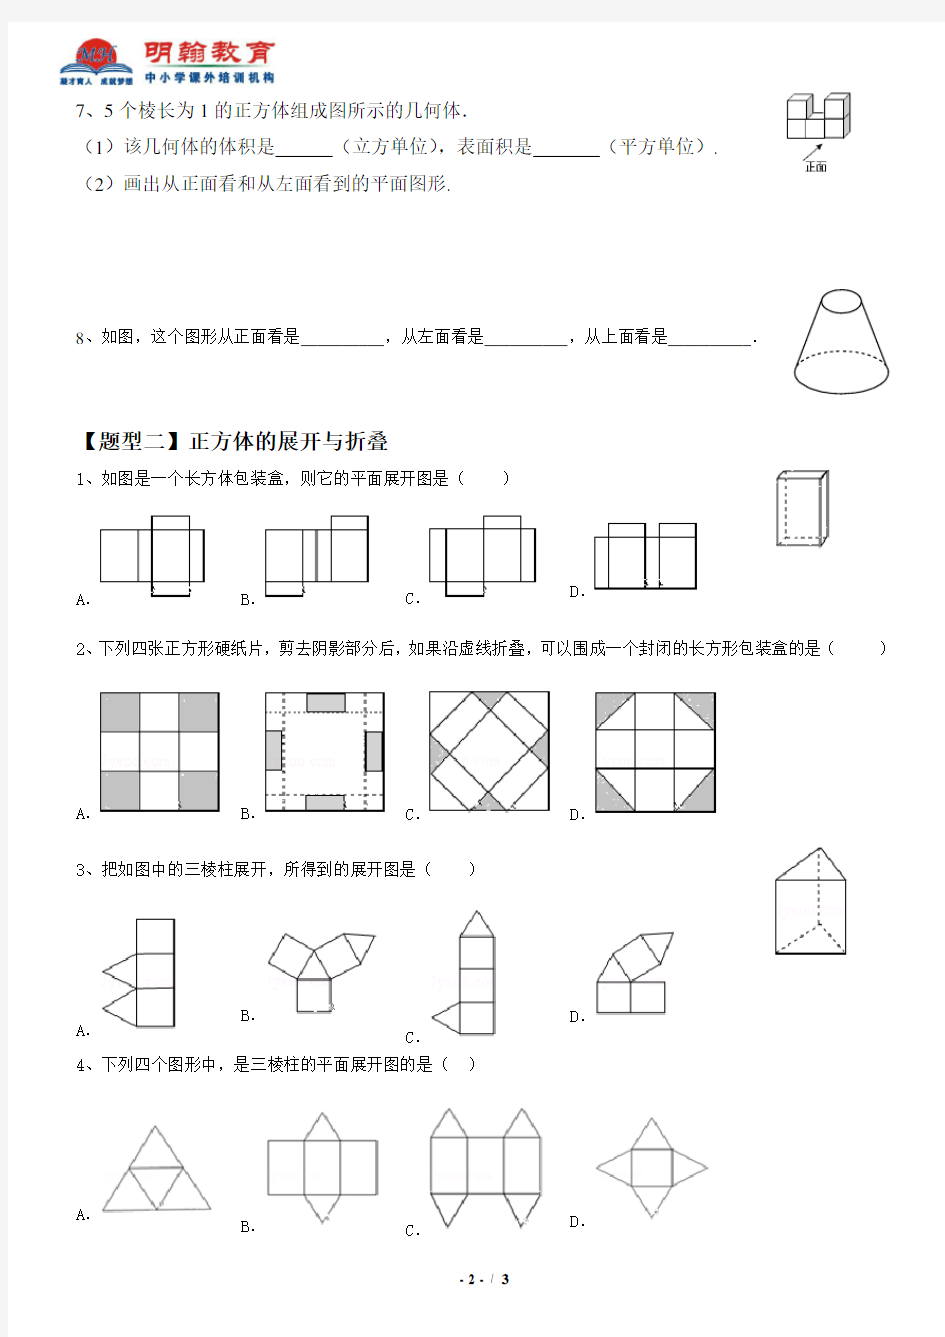 新人教版七年级几何图形初步练习专题(一)---三视图、展开图专题